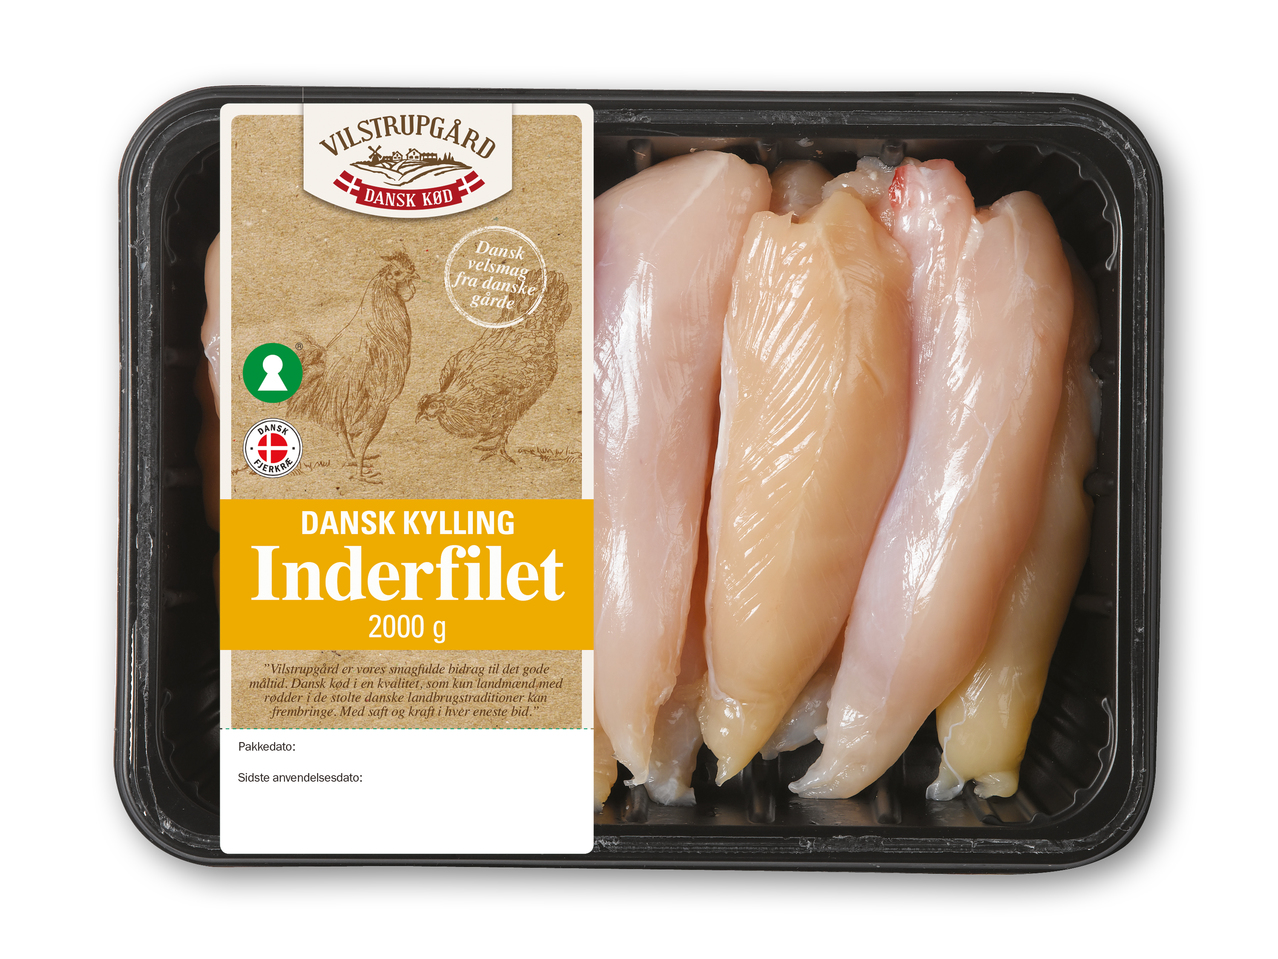 VILSTRUPGÅRD Danske kyllingeinderfileter